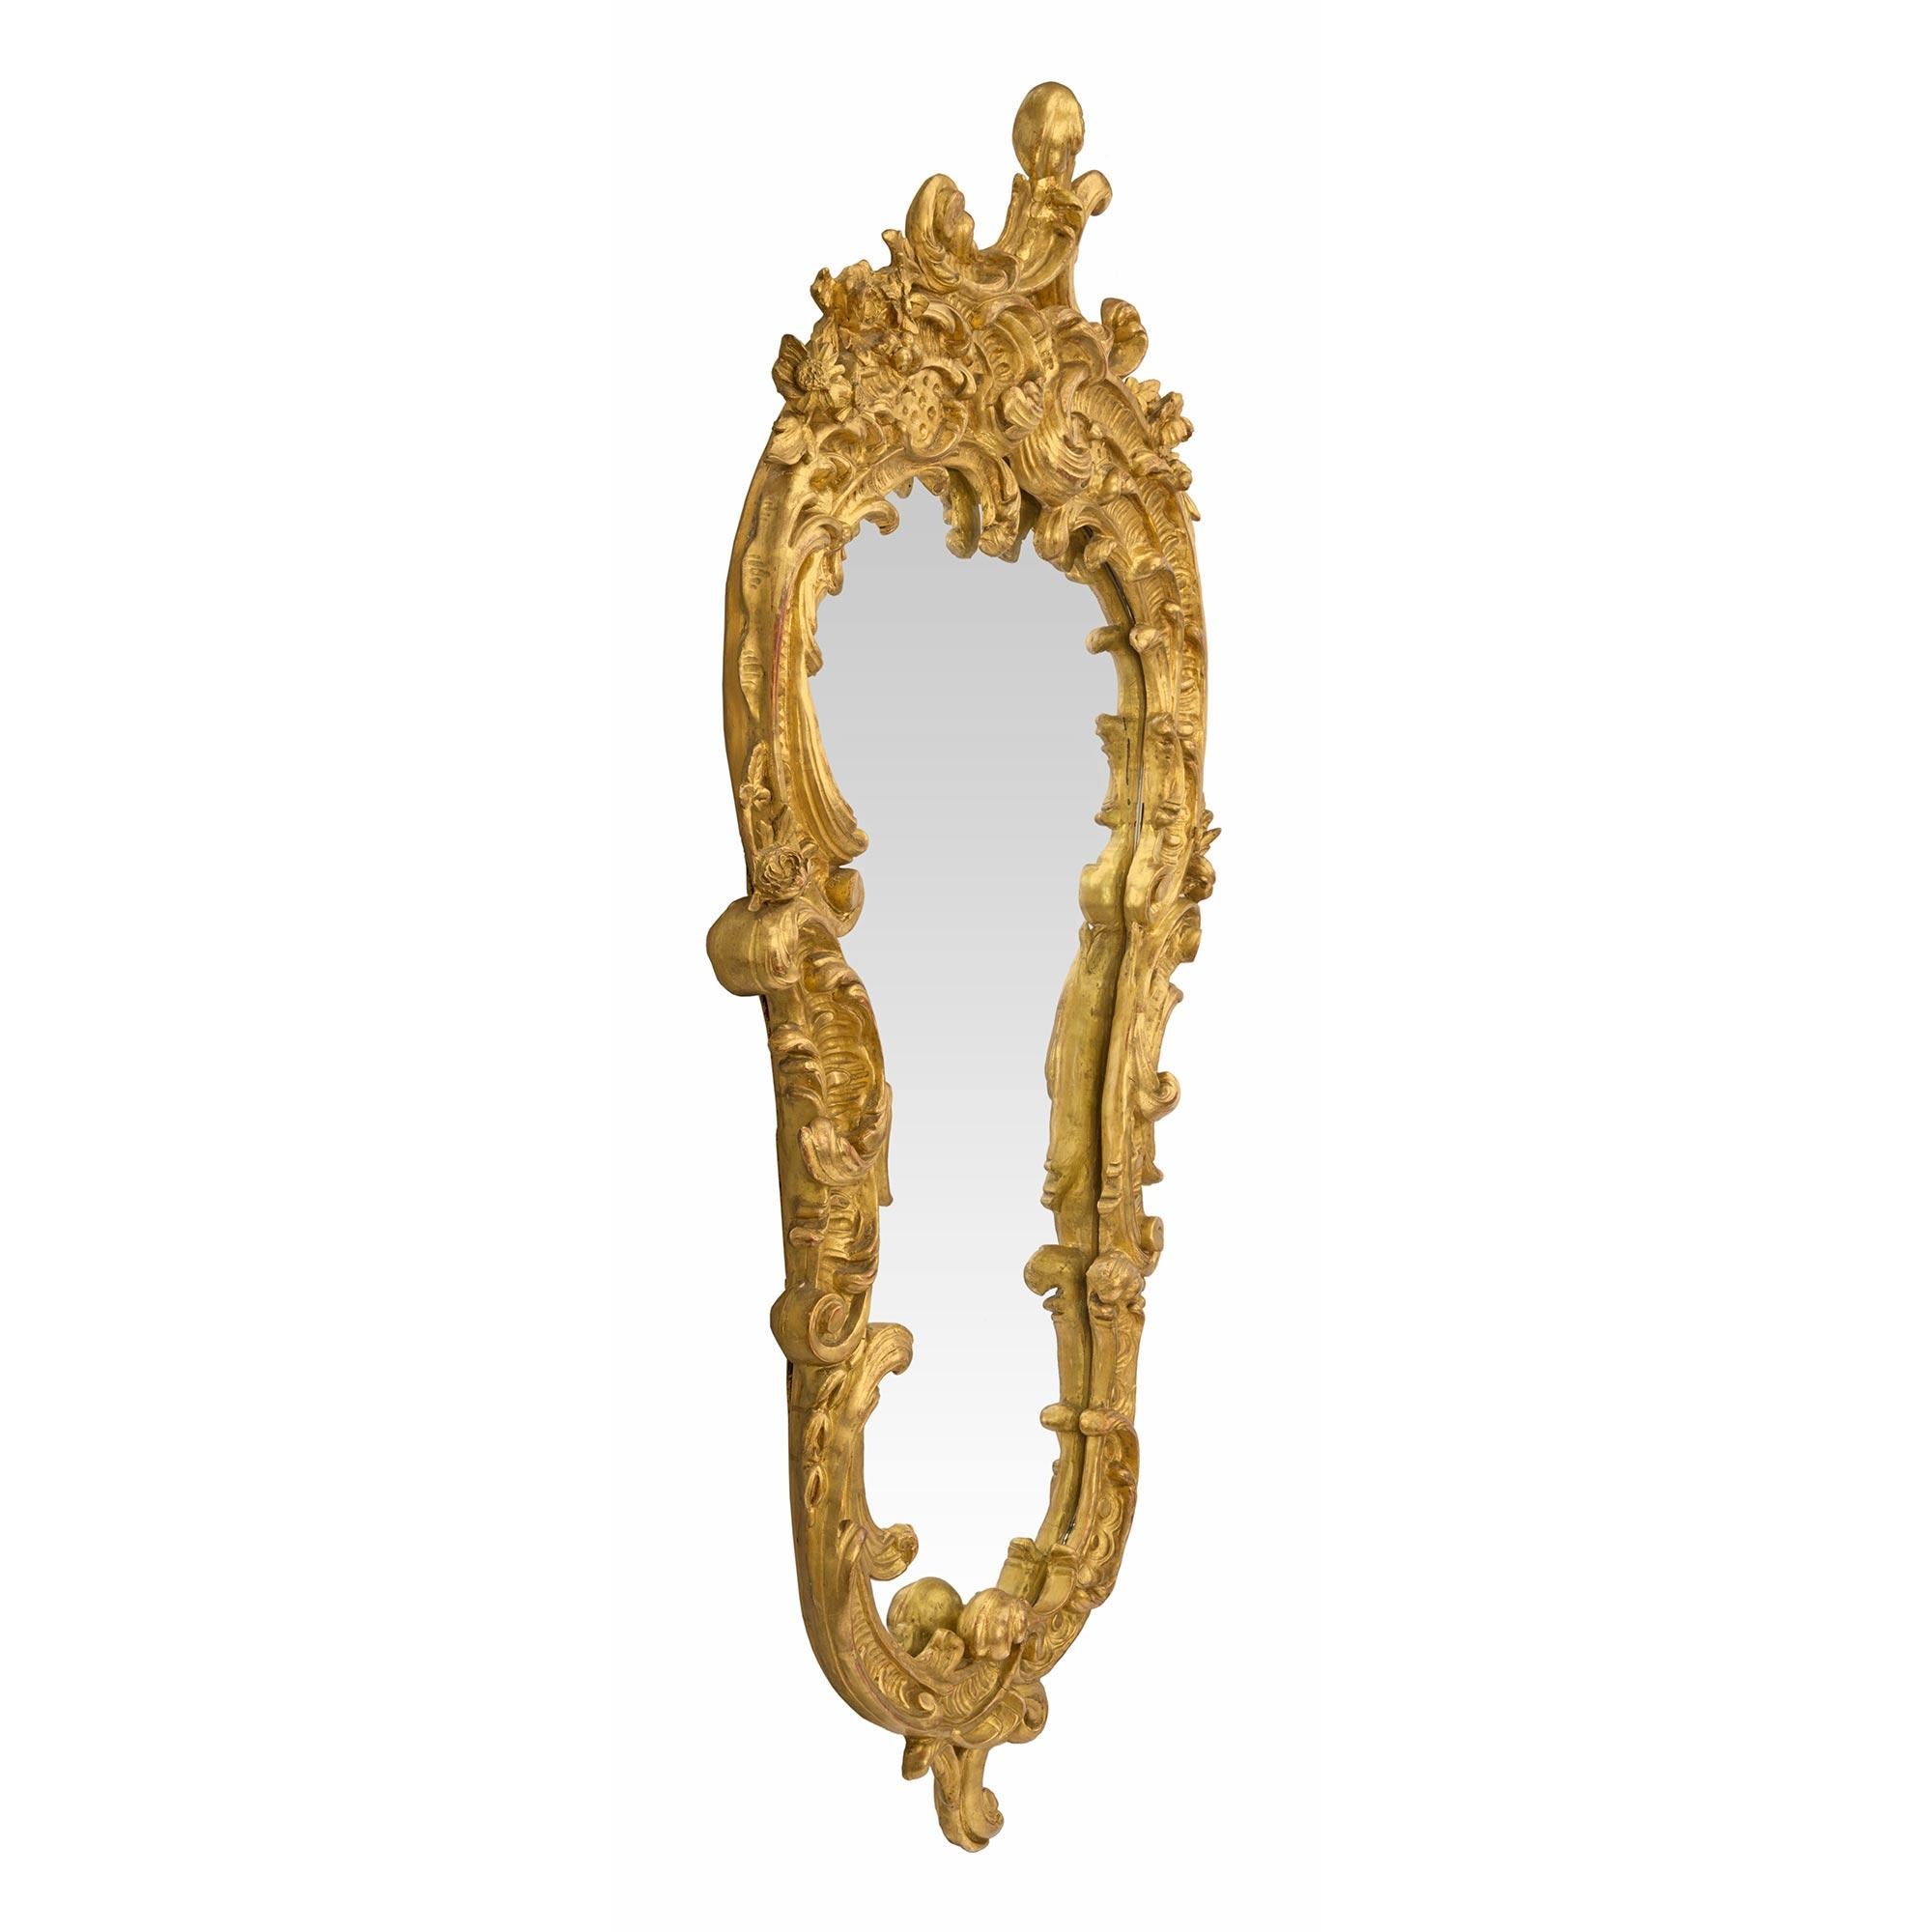 Eine schöne Französisch Mitte des 19. Jahrhunderts Louis XV st. Vergoldung Spiegel. Die Spiegelplatte ist von einer sehr dekorativen, geschwungenen Goldholzeinfassung umrahmt. Am Sockel befindet sich ein auffälliges, geschwungenes Uhrwerk mit